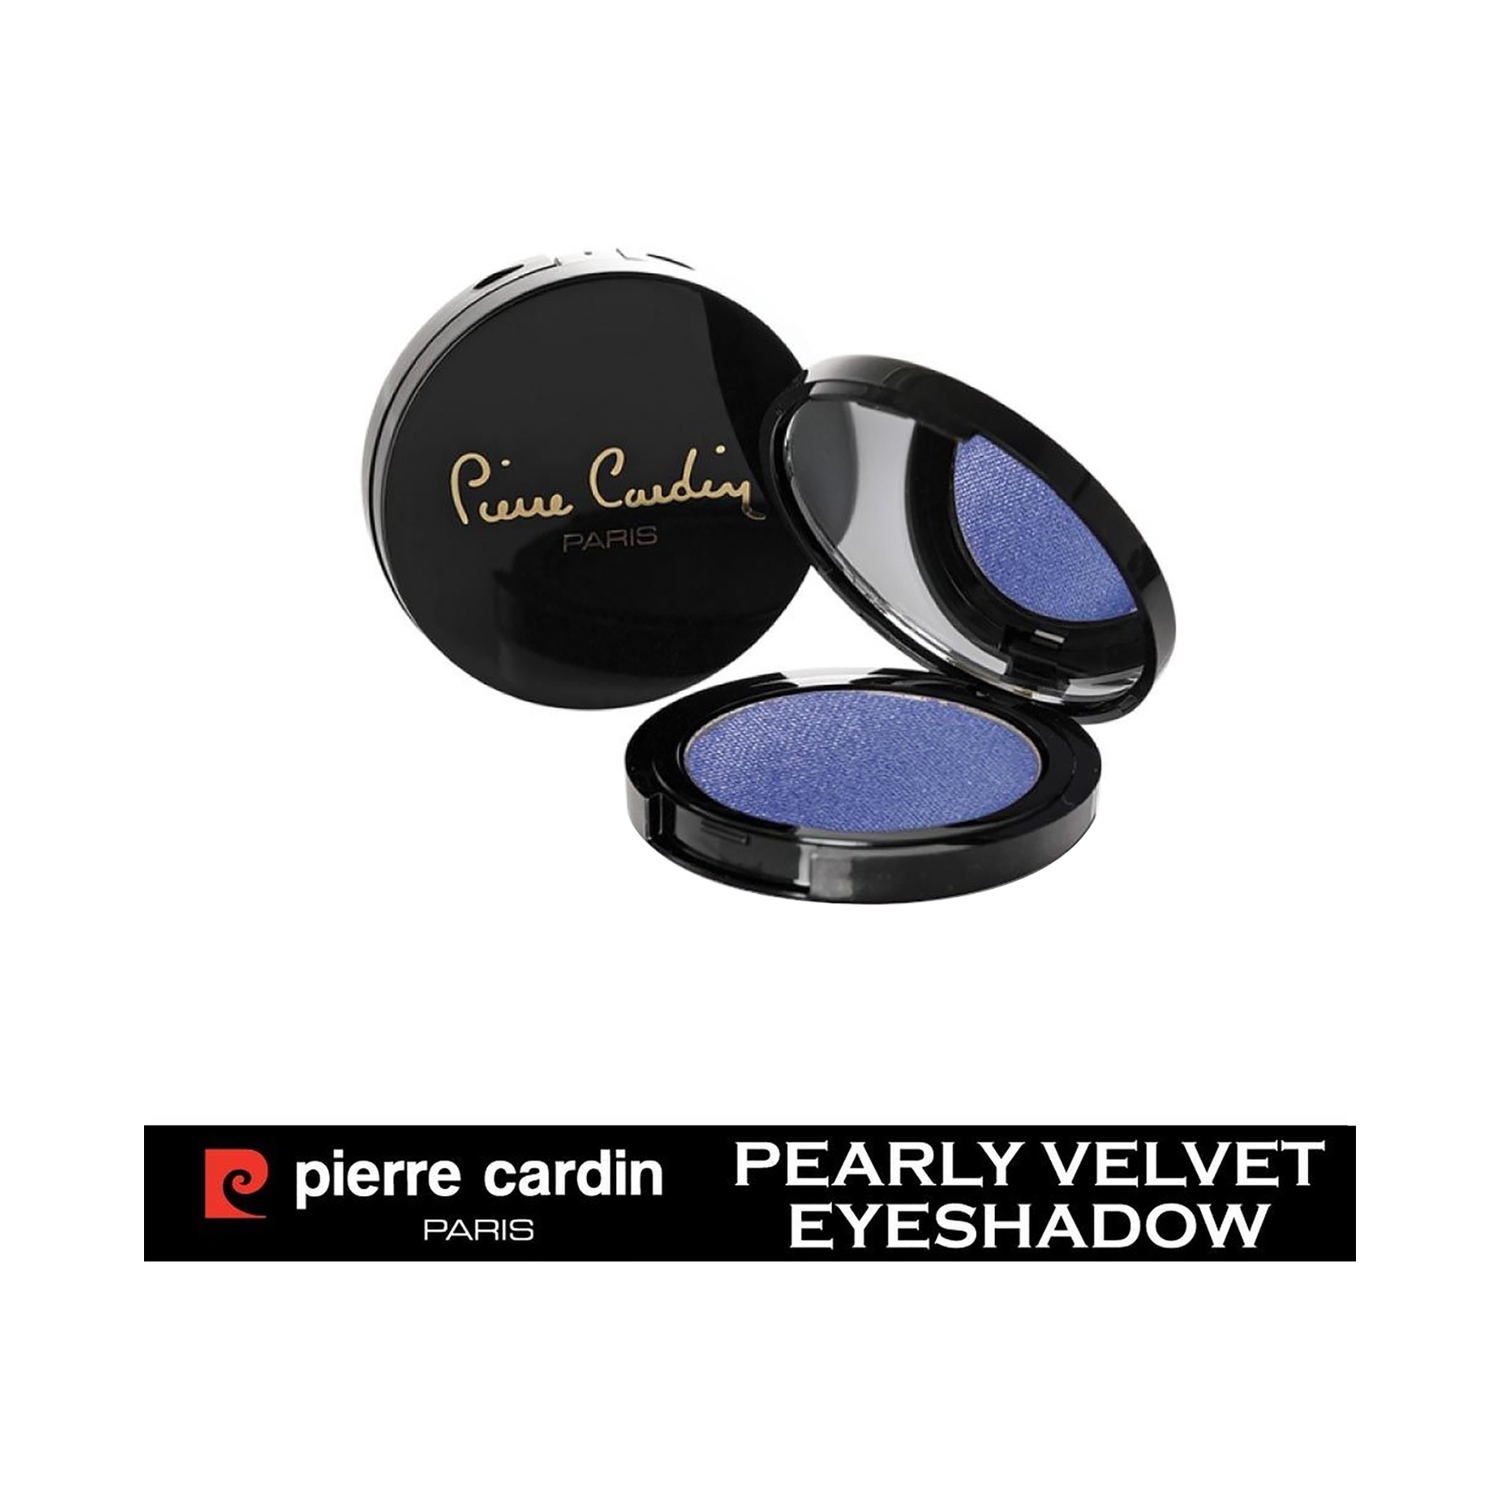 Pierre Cardin Paris | Pierre Cardin Paris Pearly Velvet Eye Shadow - 780 Indigo Blue (4g)